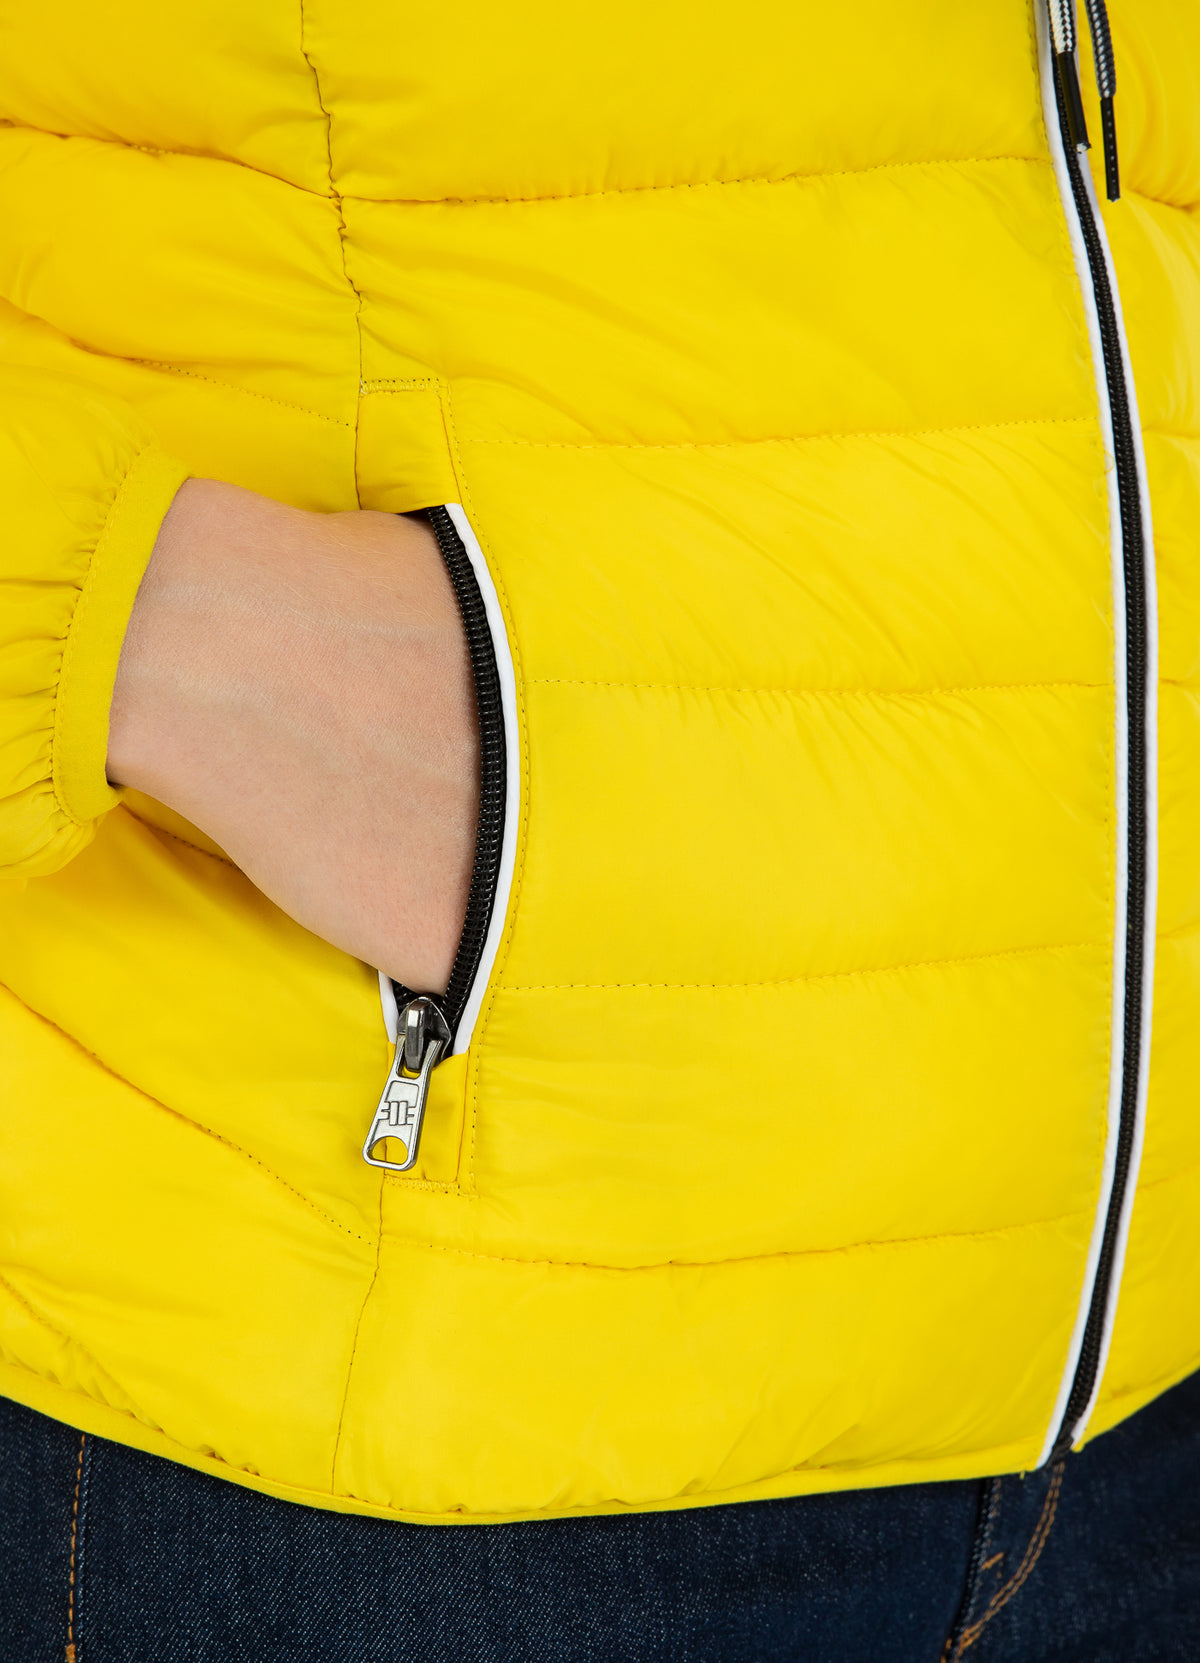 Women's Padded Jacket Seacoast Yellow - Pitbull West Coast International Store 